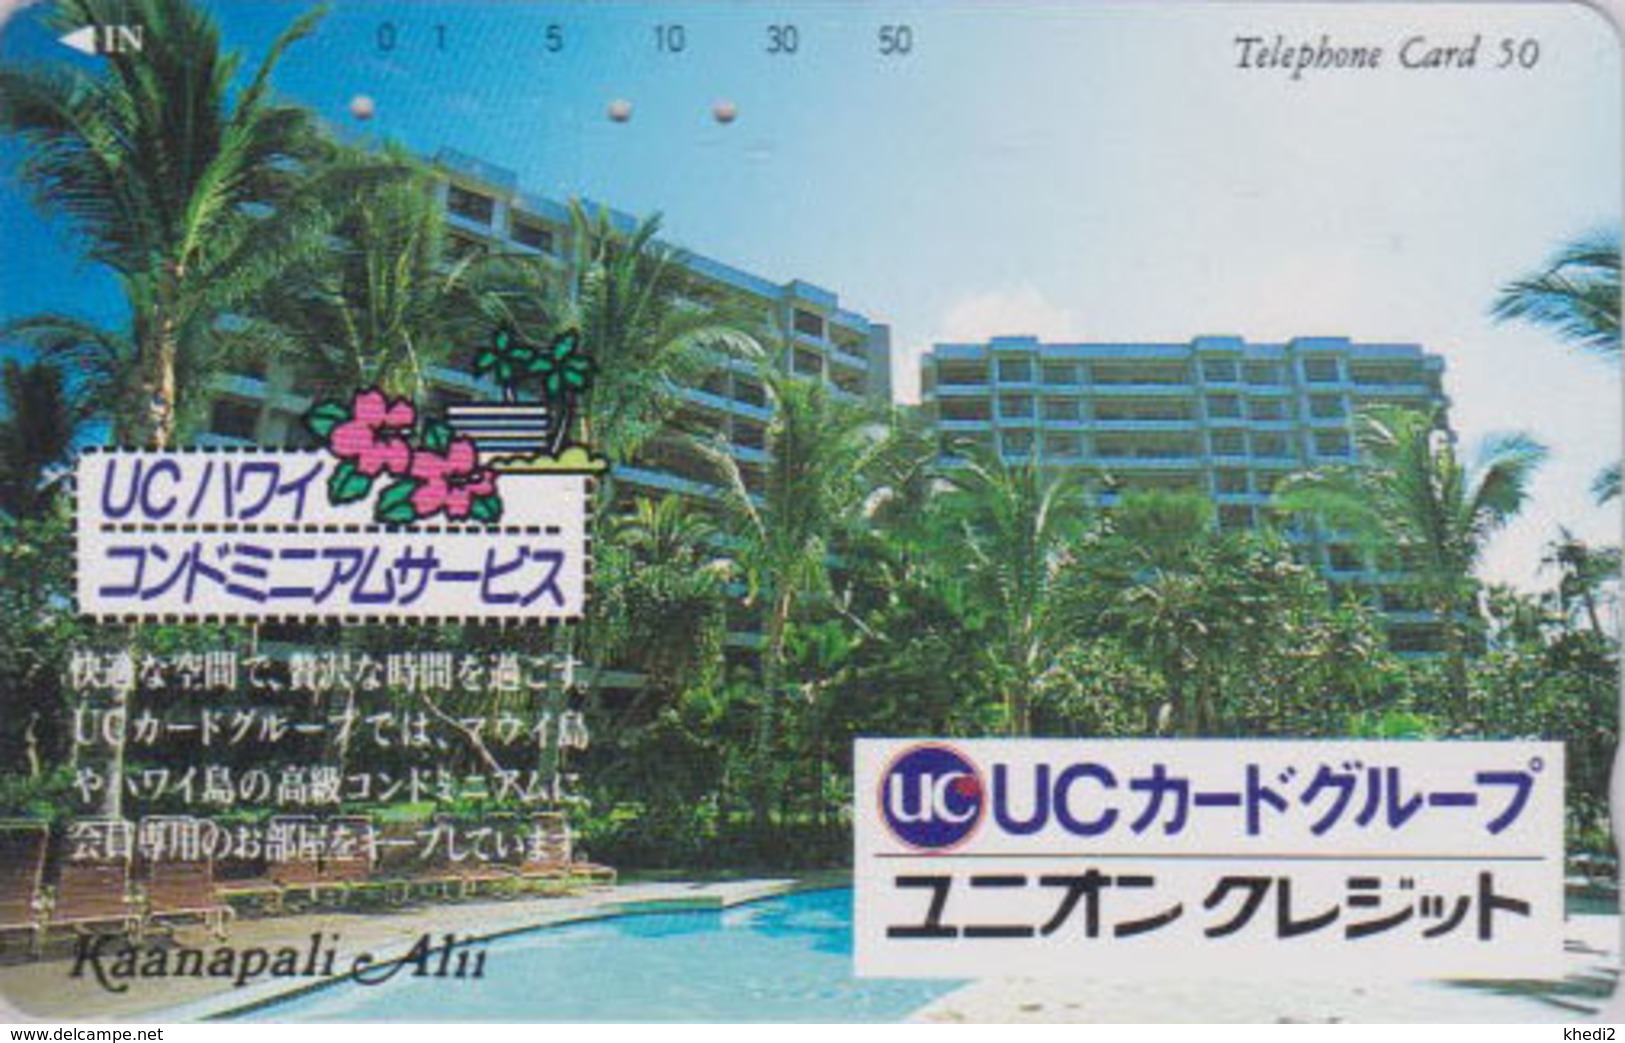 Télécarte Japon / 110-117617 - HAWAII - KAANAPALI - UC BANK CREDIT CARD / Modèle 2 - Japan Phonecard - Site USA 460 - Stamps & Coins